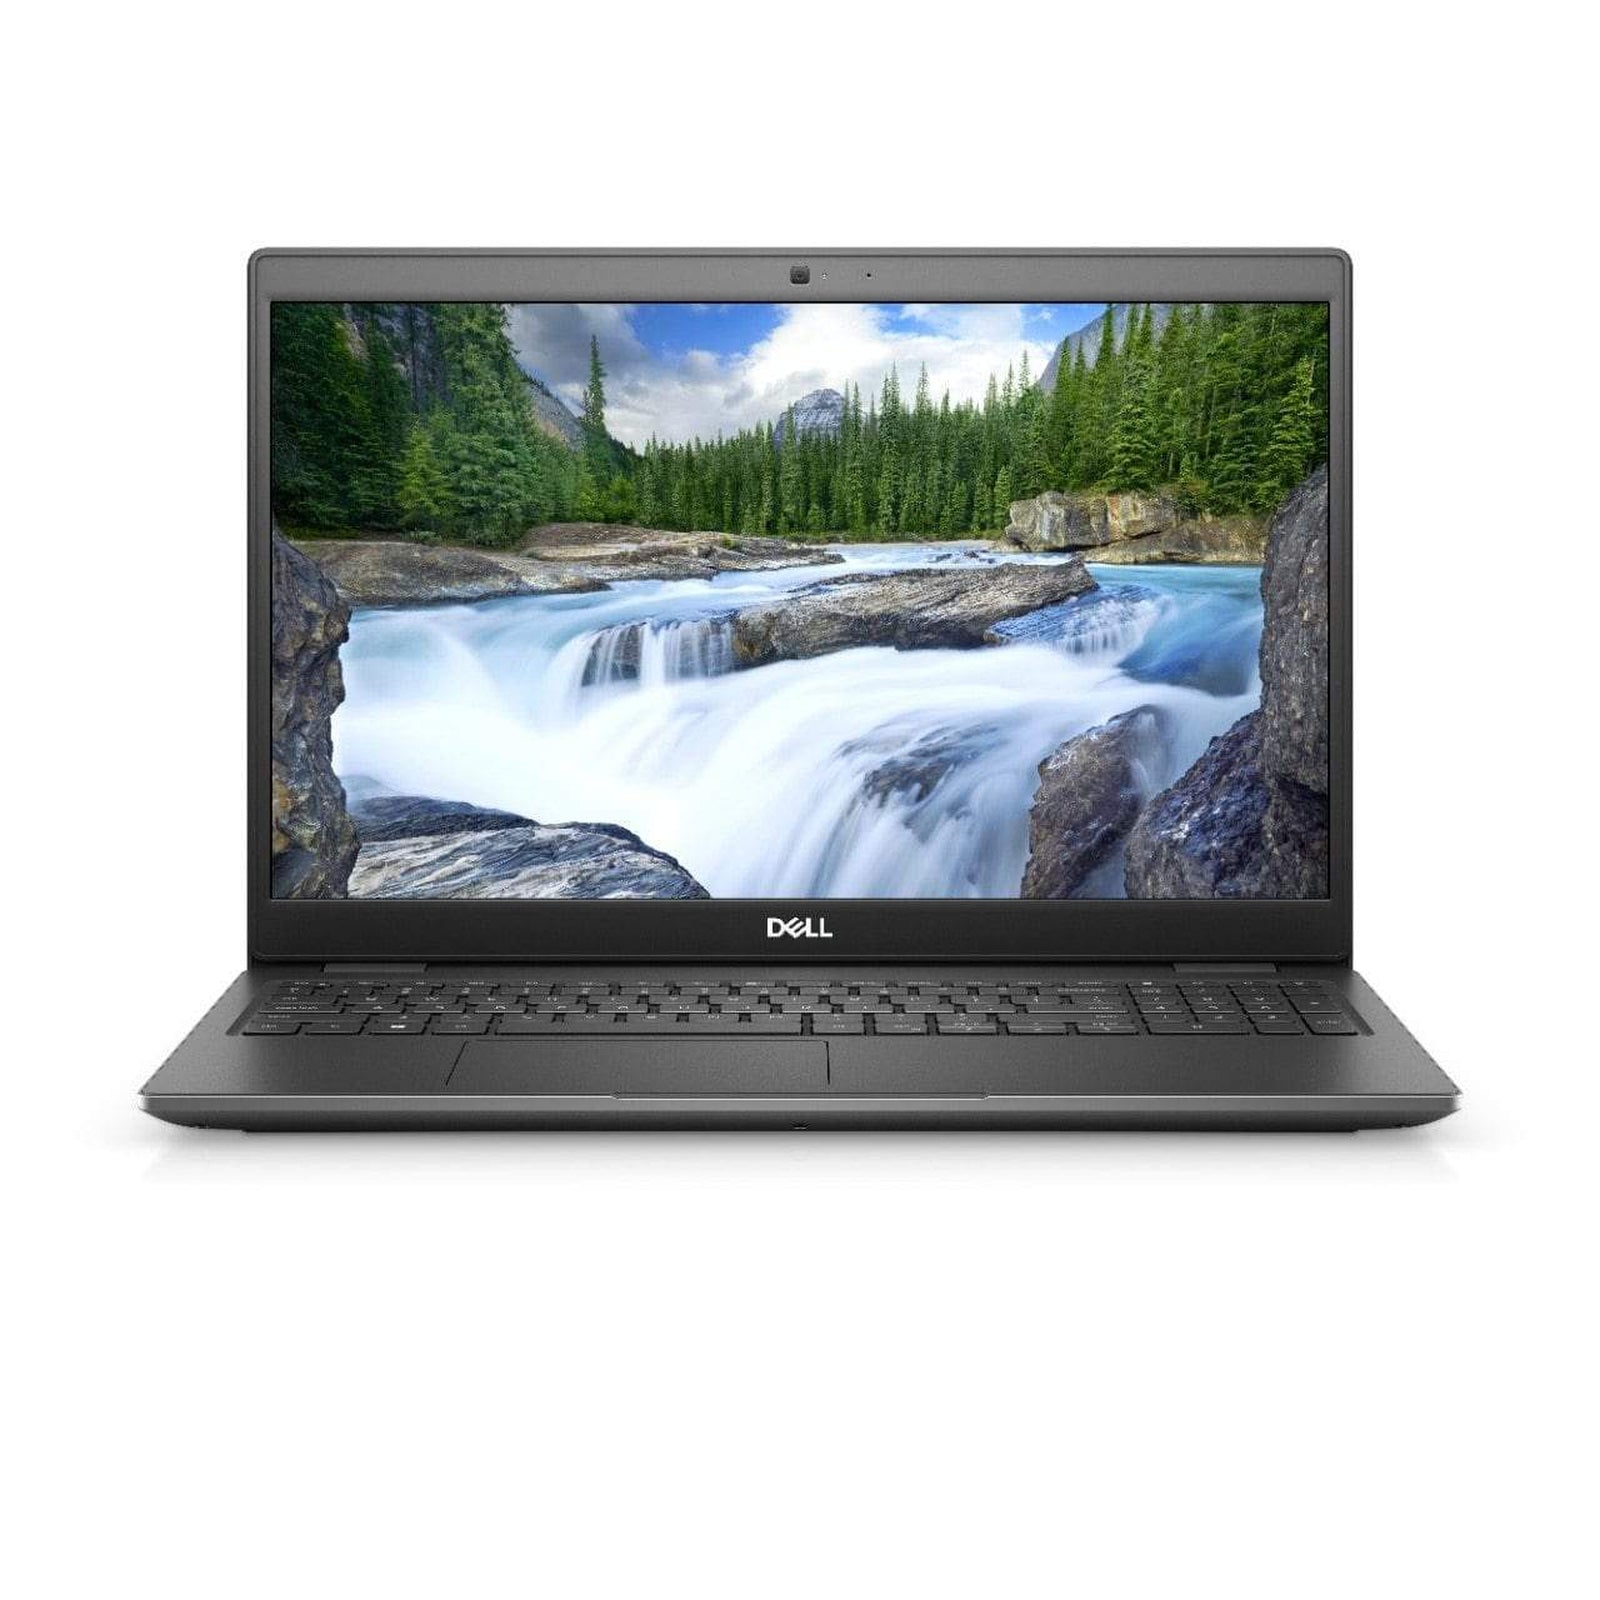 BSB-FP0QP2RARKGIPLJA-REF-REF-LAP-DL 2020 Dell Latitude 3510 Laptop 15.6" - i5 - i5-10210U - Quad Core 4.2Ghz - 256GB SSD - 8GB RAM - 1920x1080 FHD - Windows 10 Pro Black